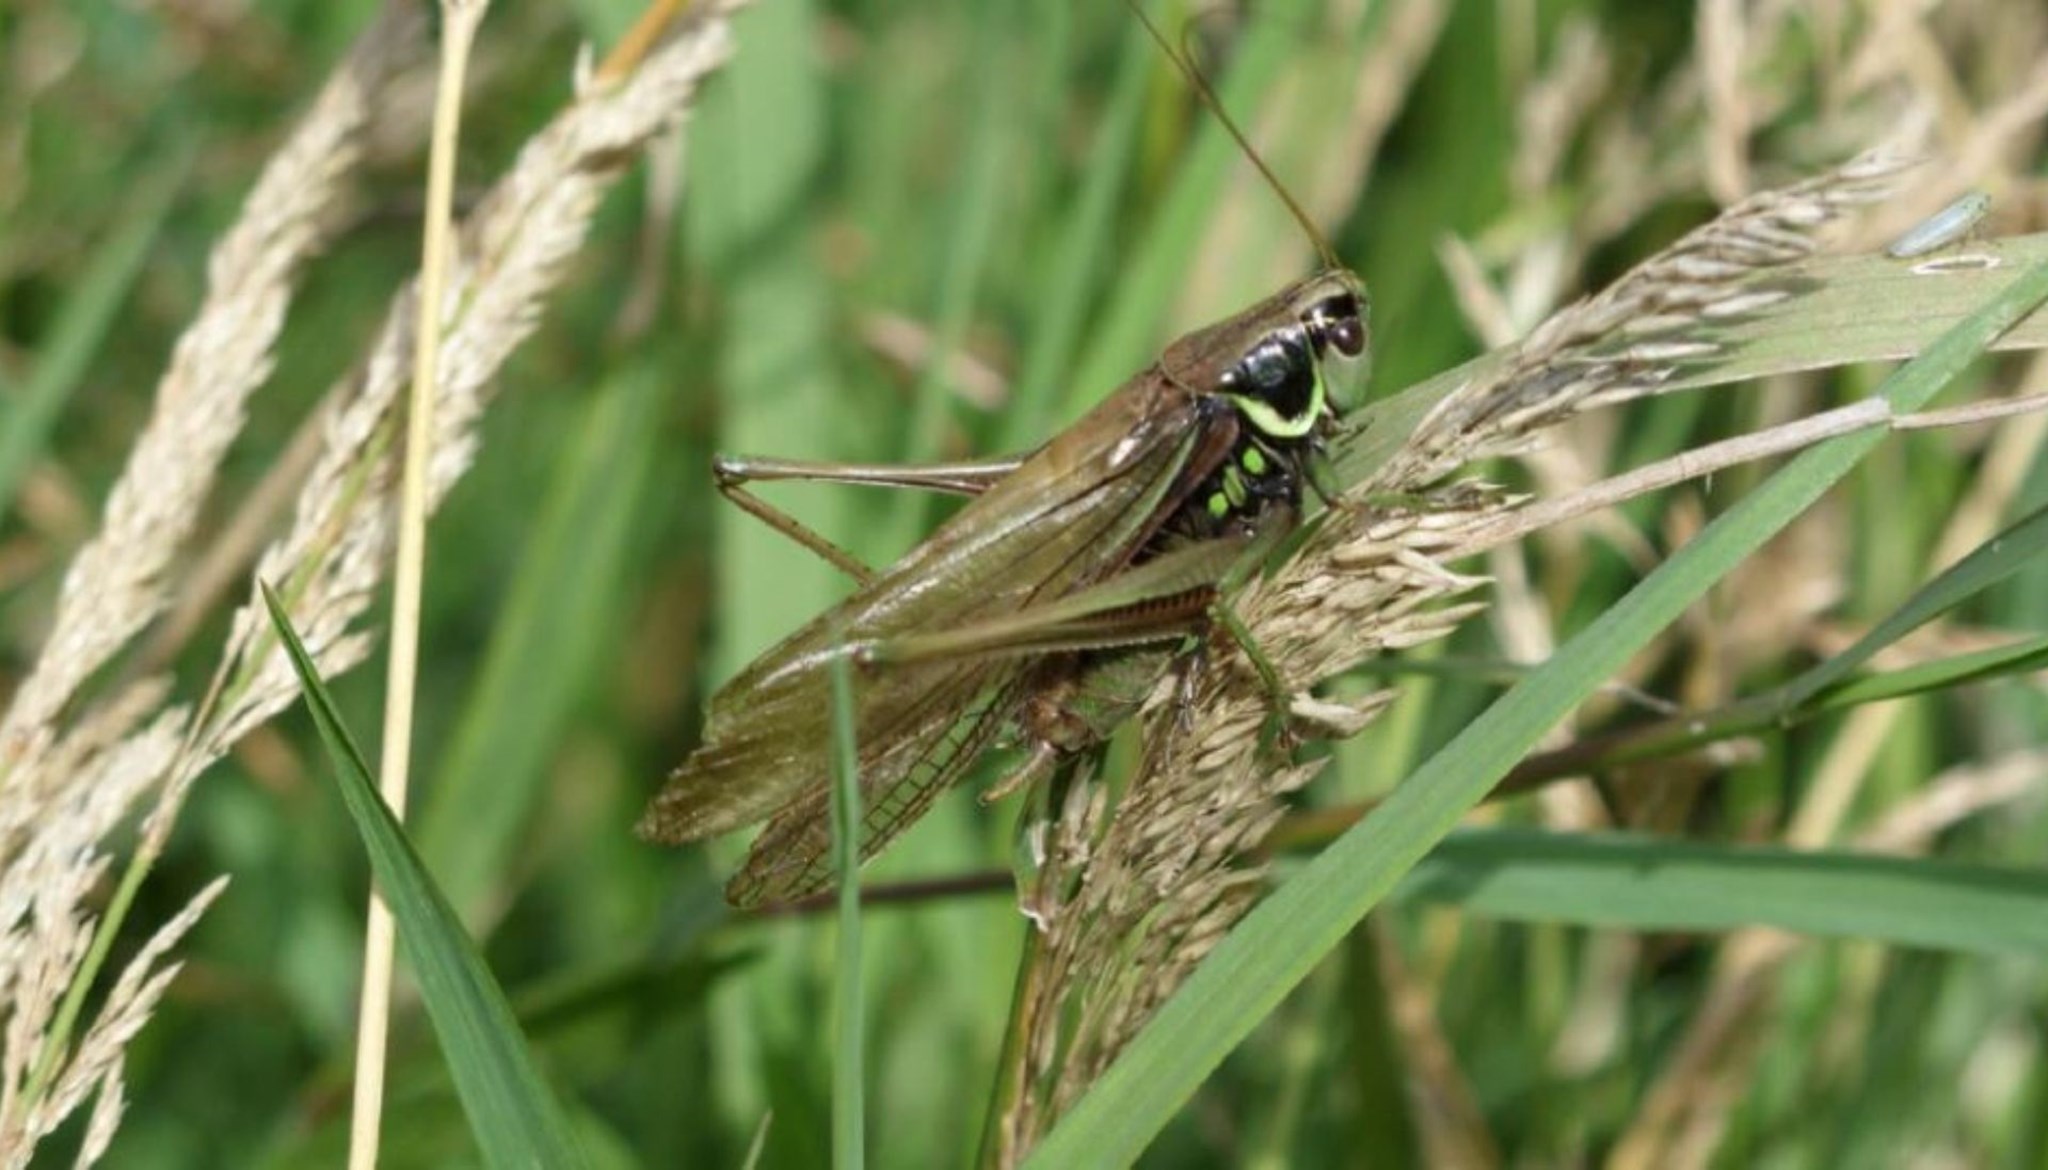 Grasshopper Image - Media.jpg